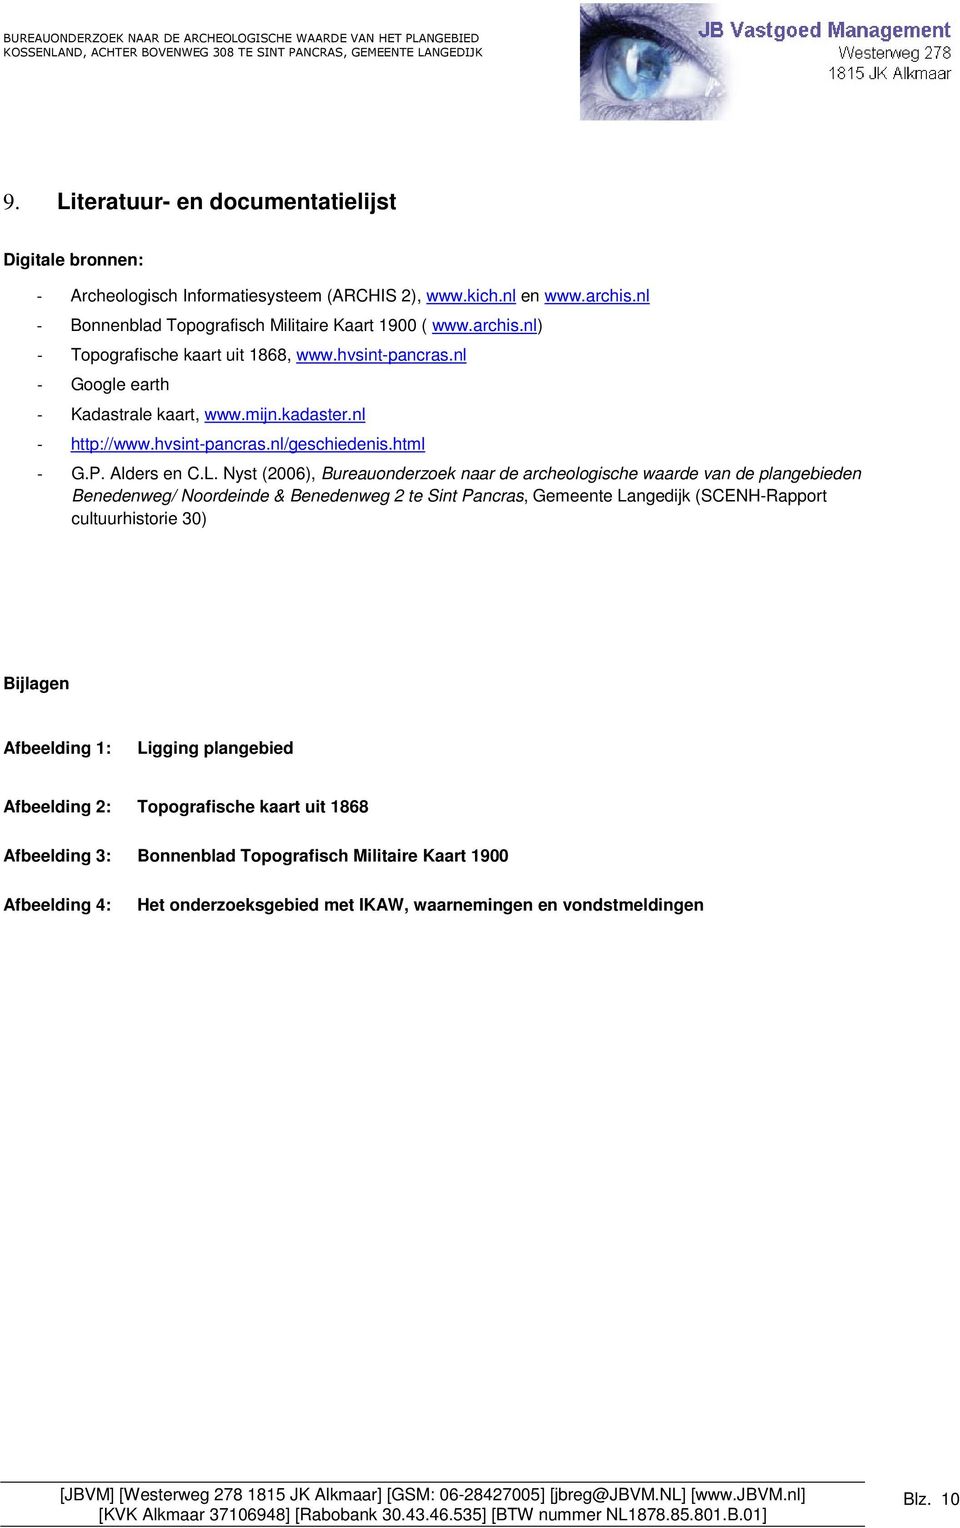 Nyst (2006), Bureauonderzoek naar de archeologische waarde van de plangebieden Benedenweg/ Noordeinde & Benedenweg 2 te Sint Pancras, Gemeente Langedijk (SCENH-Rapport cultuurhistorie 30) Bijlagen